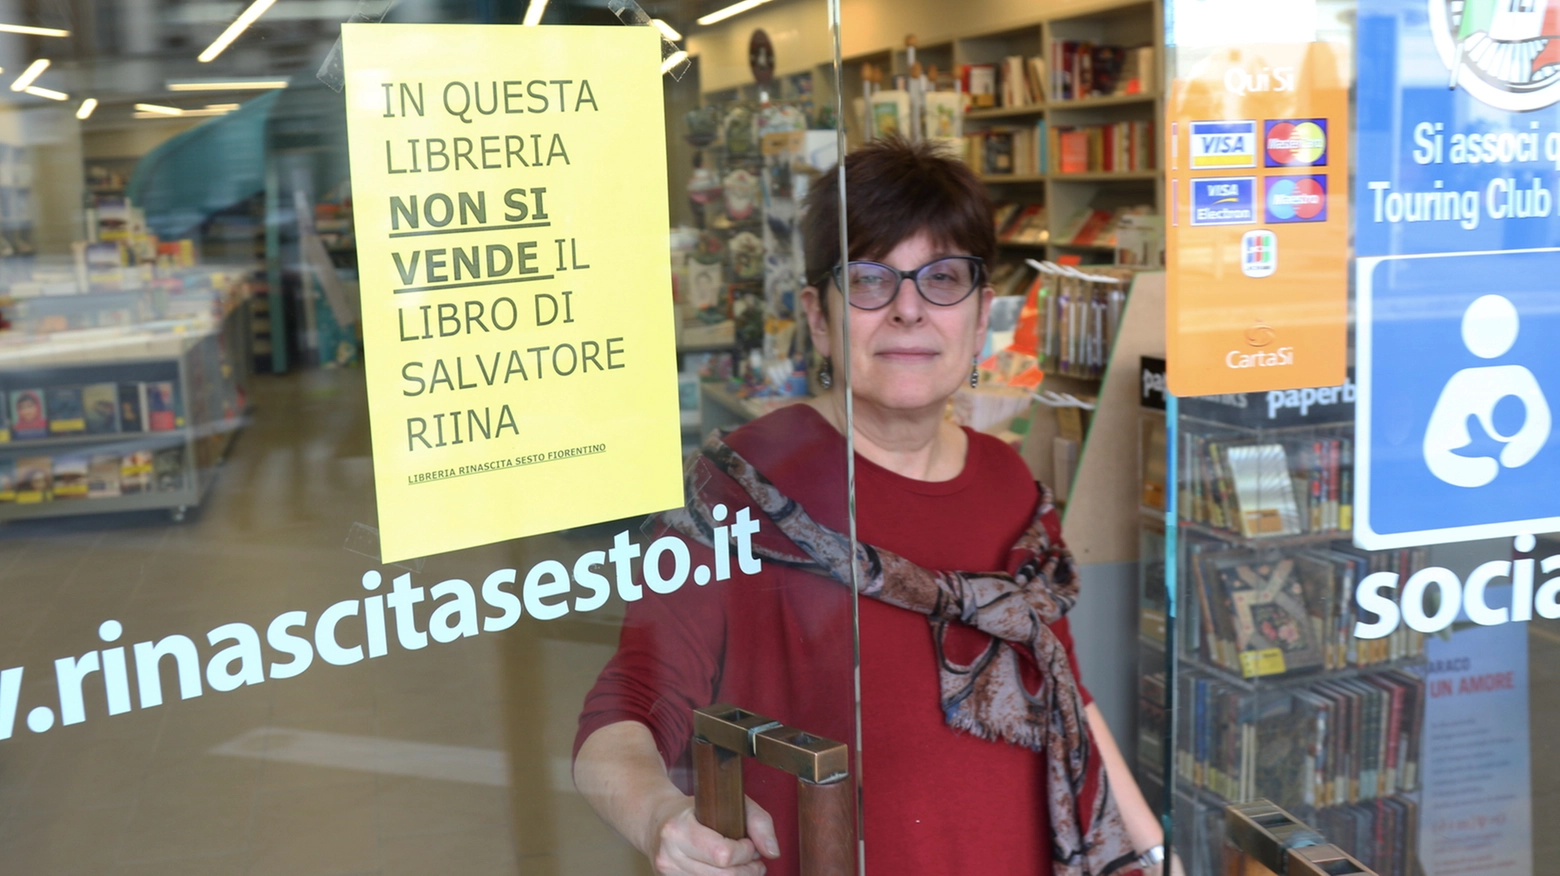 La libreria Rinascita col cartello affisso (Germogli)